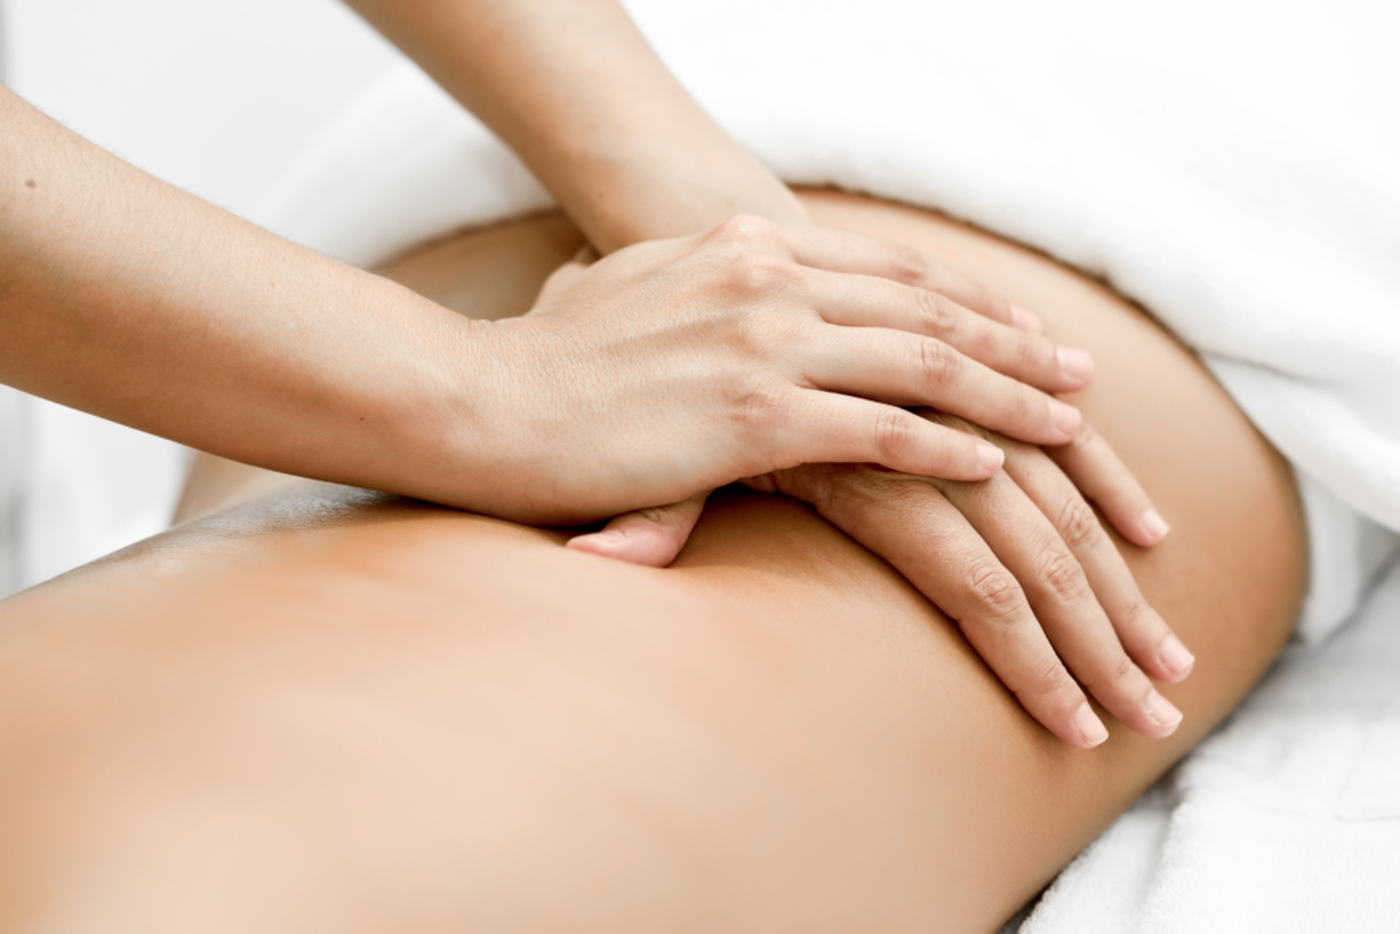 Come sfruttare al meglio i corsi per massaggiatori